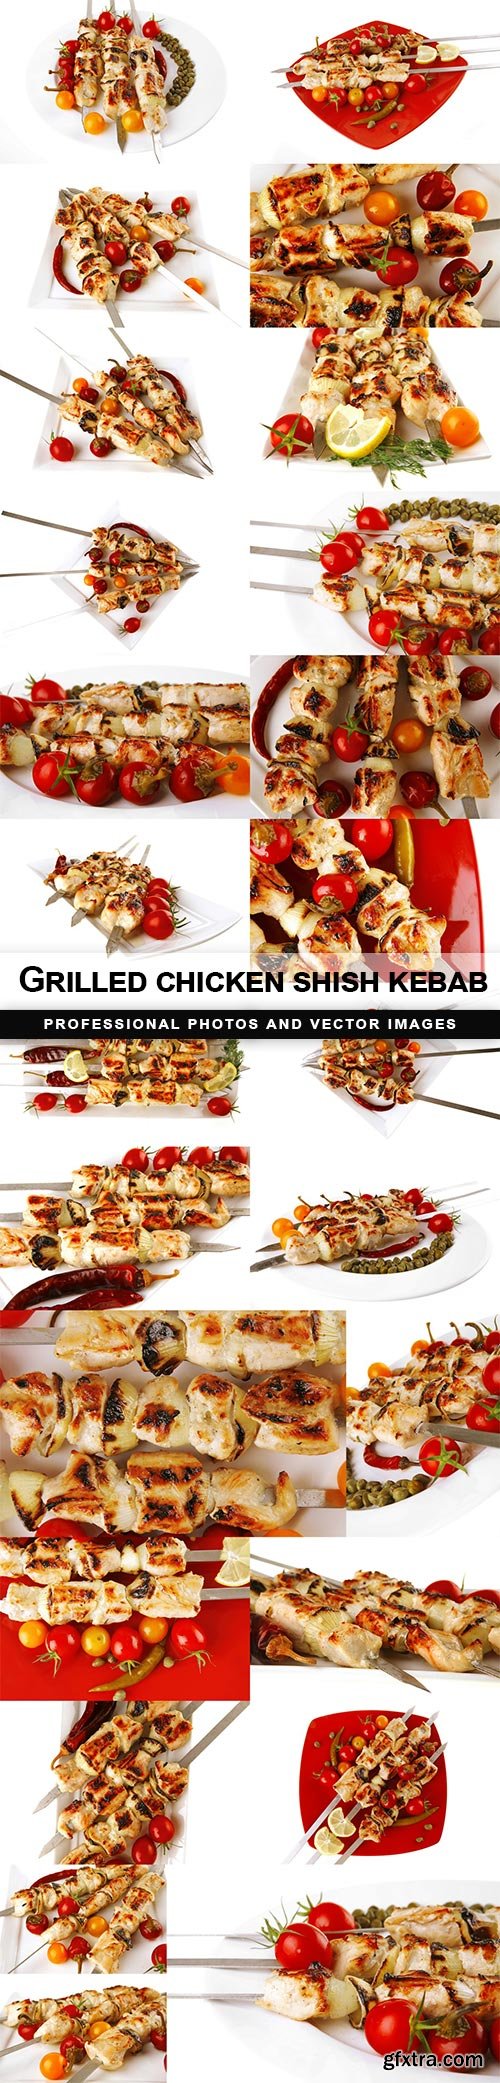 Grilled chicken shish kebab